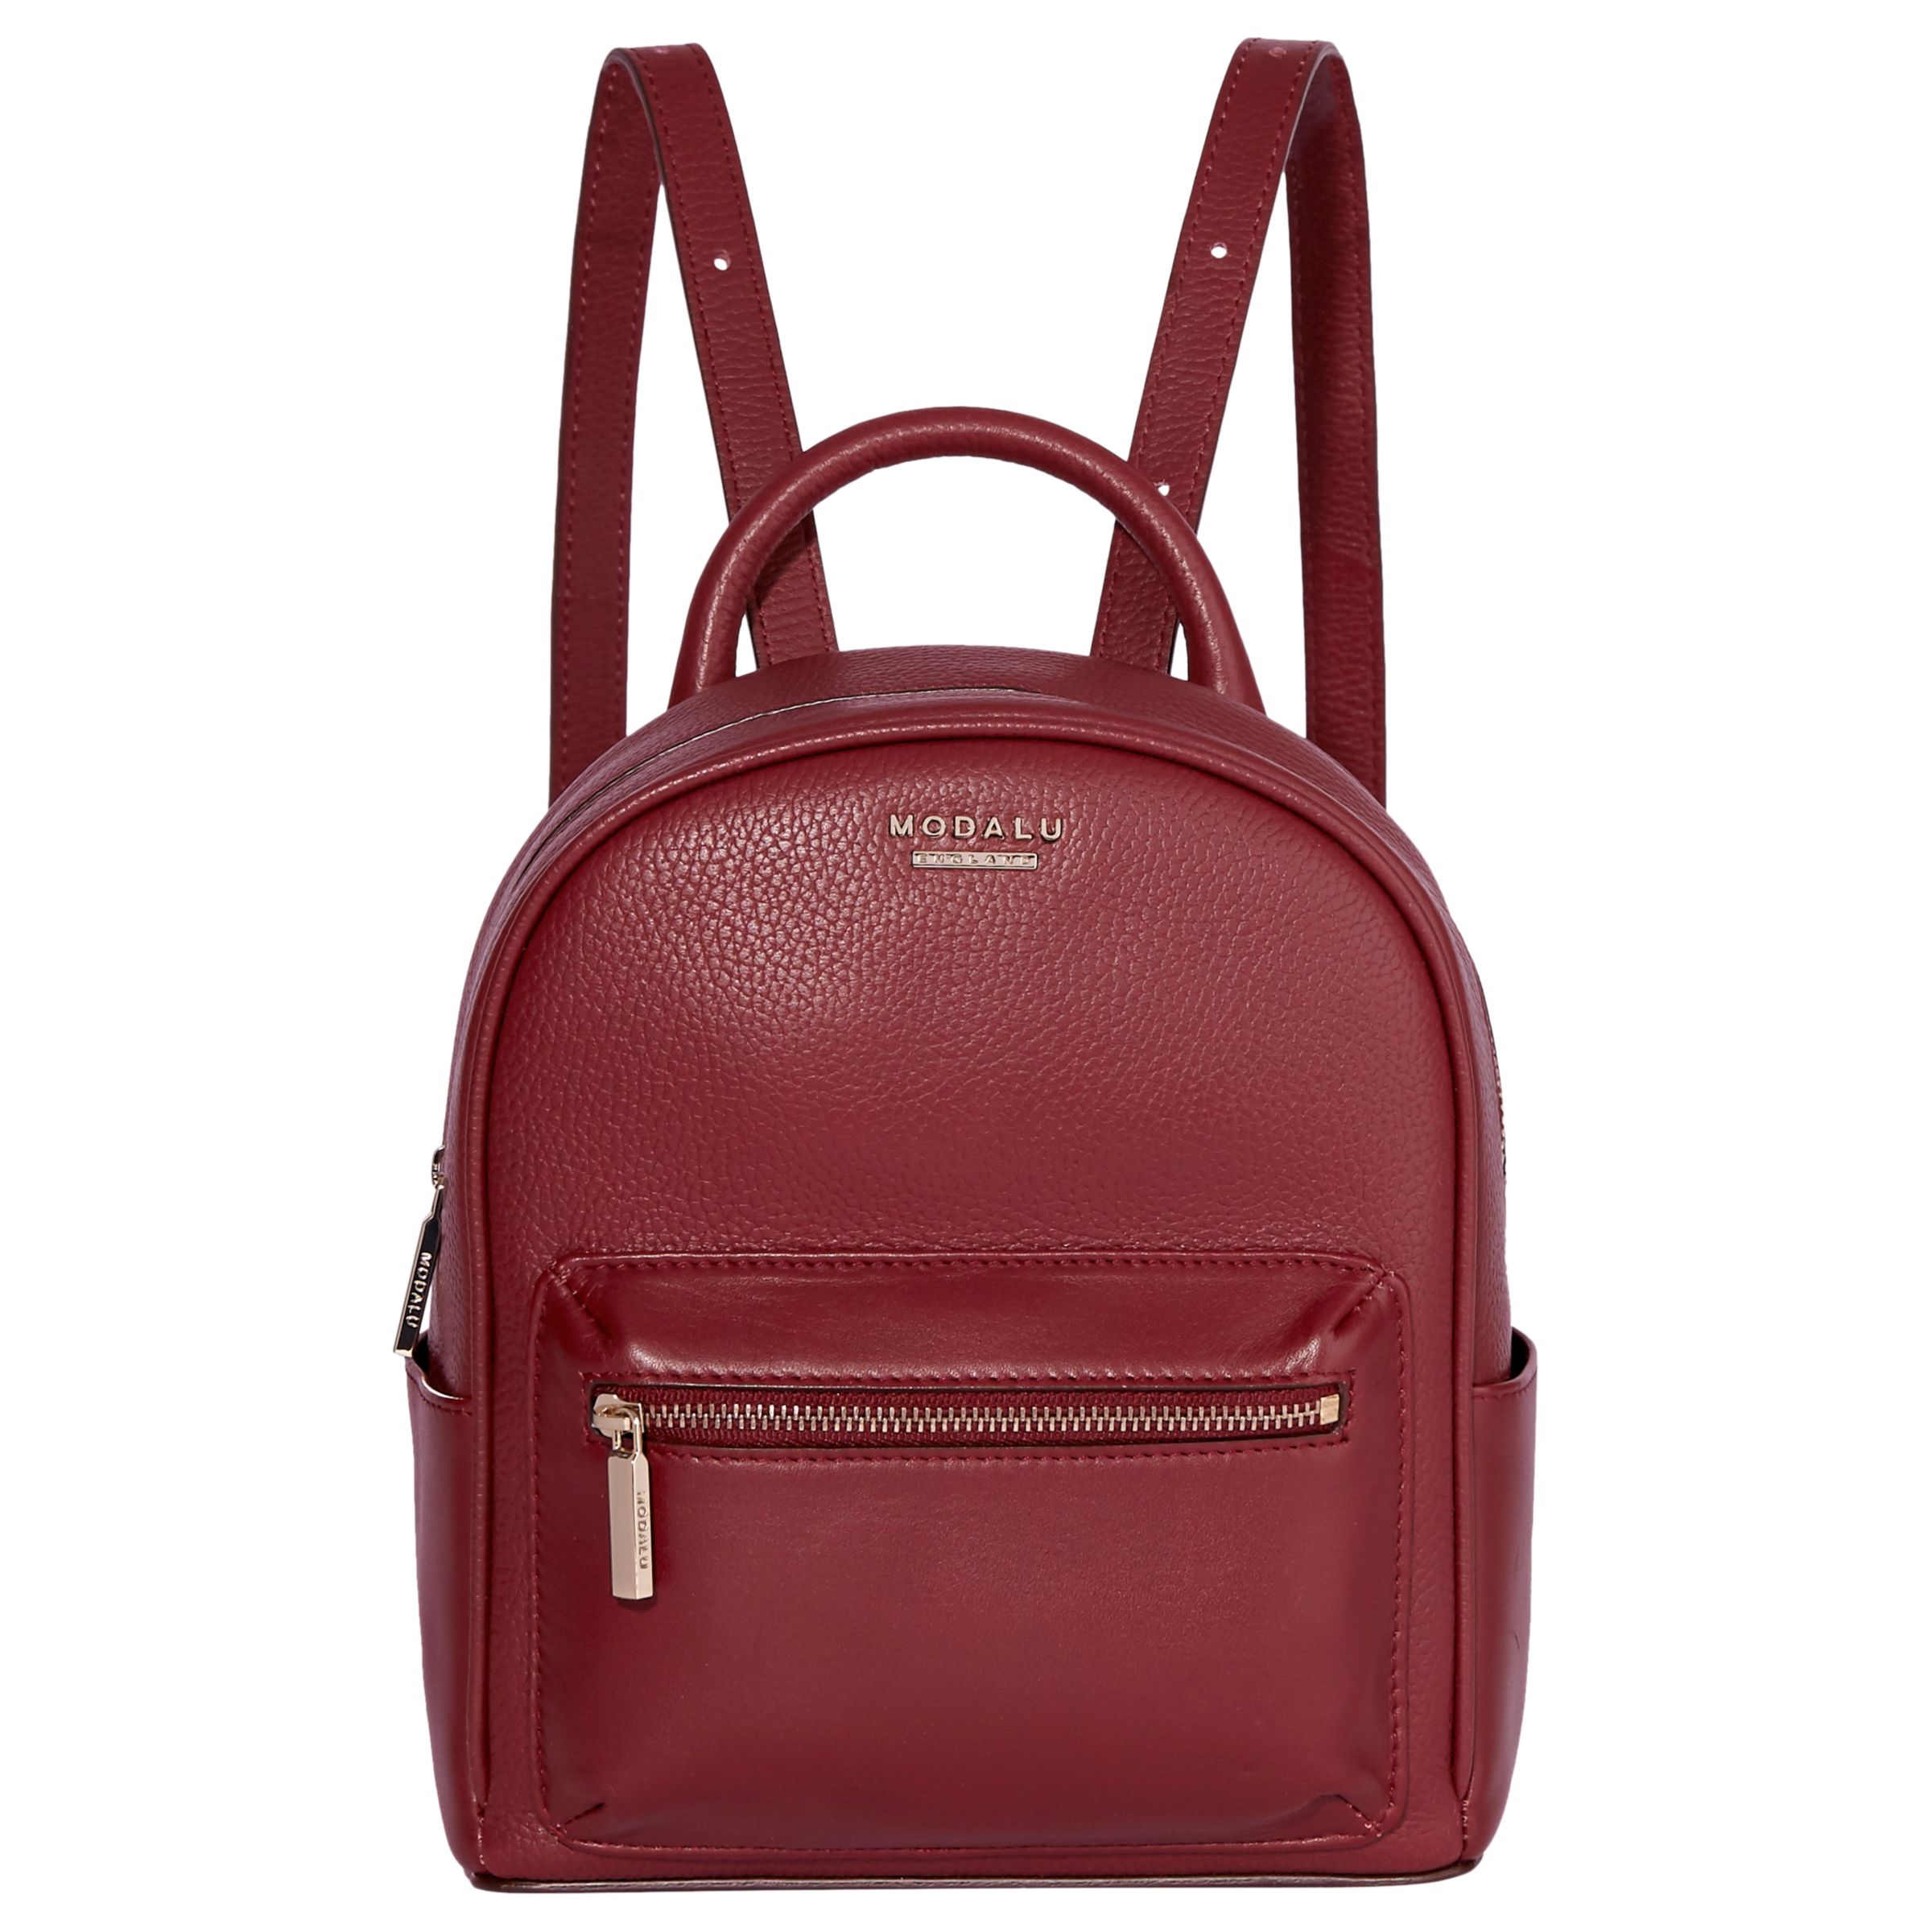 Modalu Maddie Leather Mini Backpack, Berry